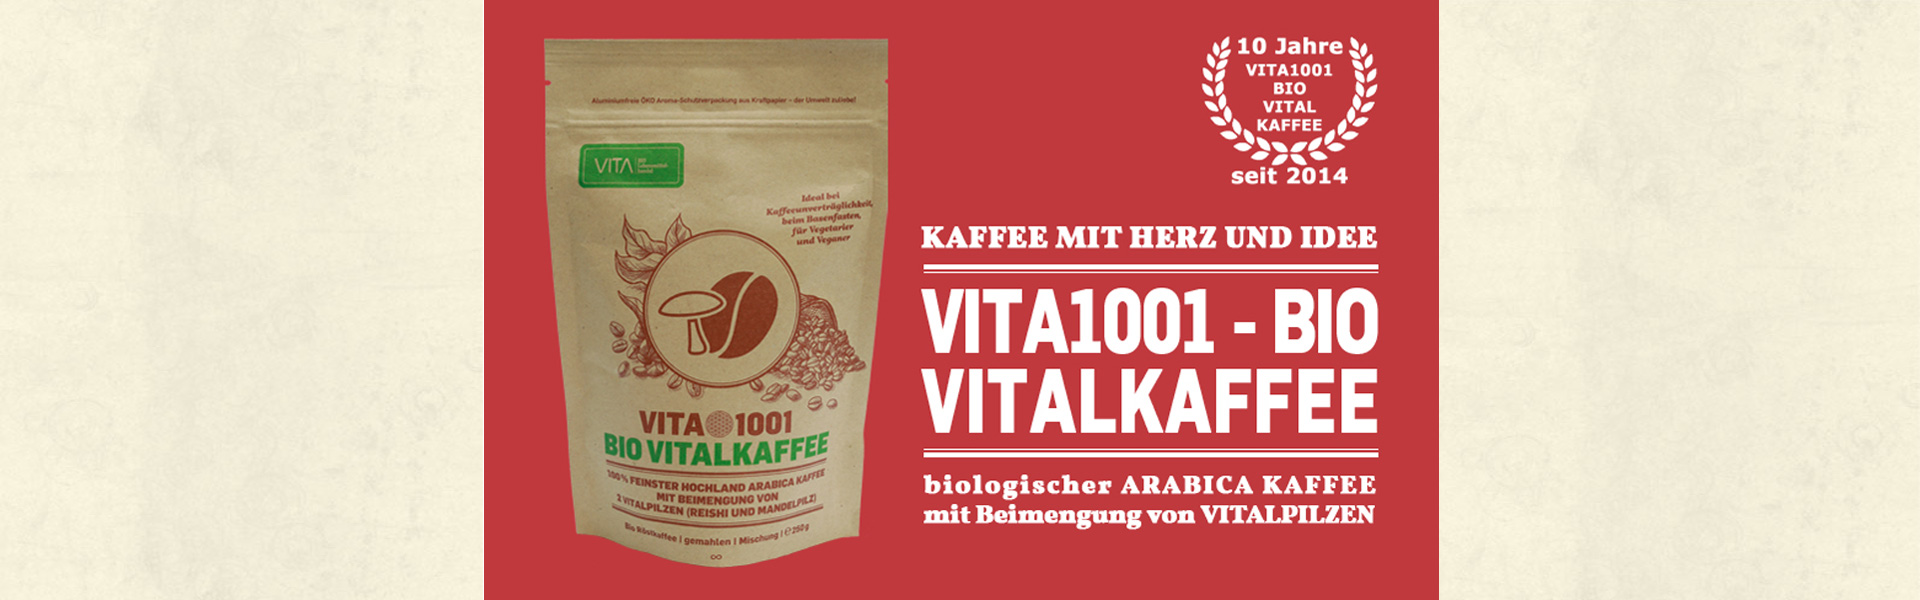 Slider03_VITA1001-Bio_Vitalkaffee